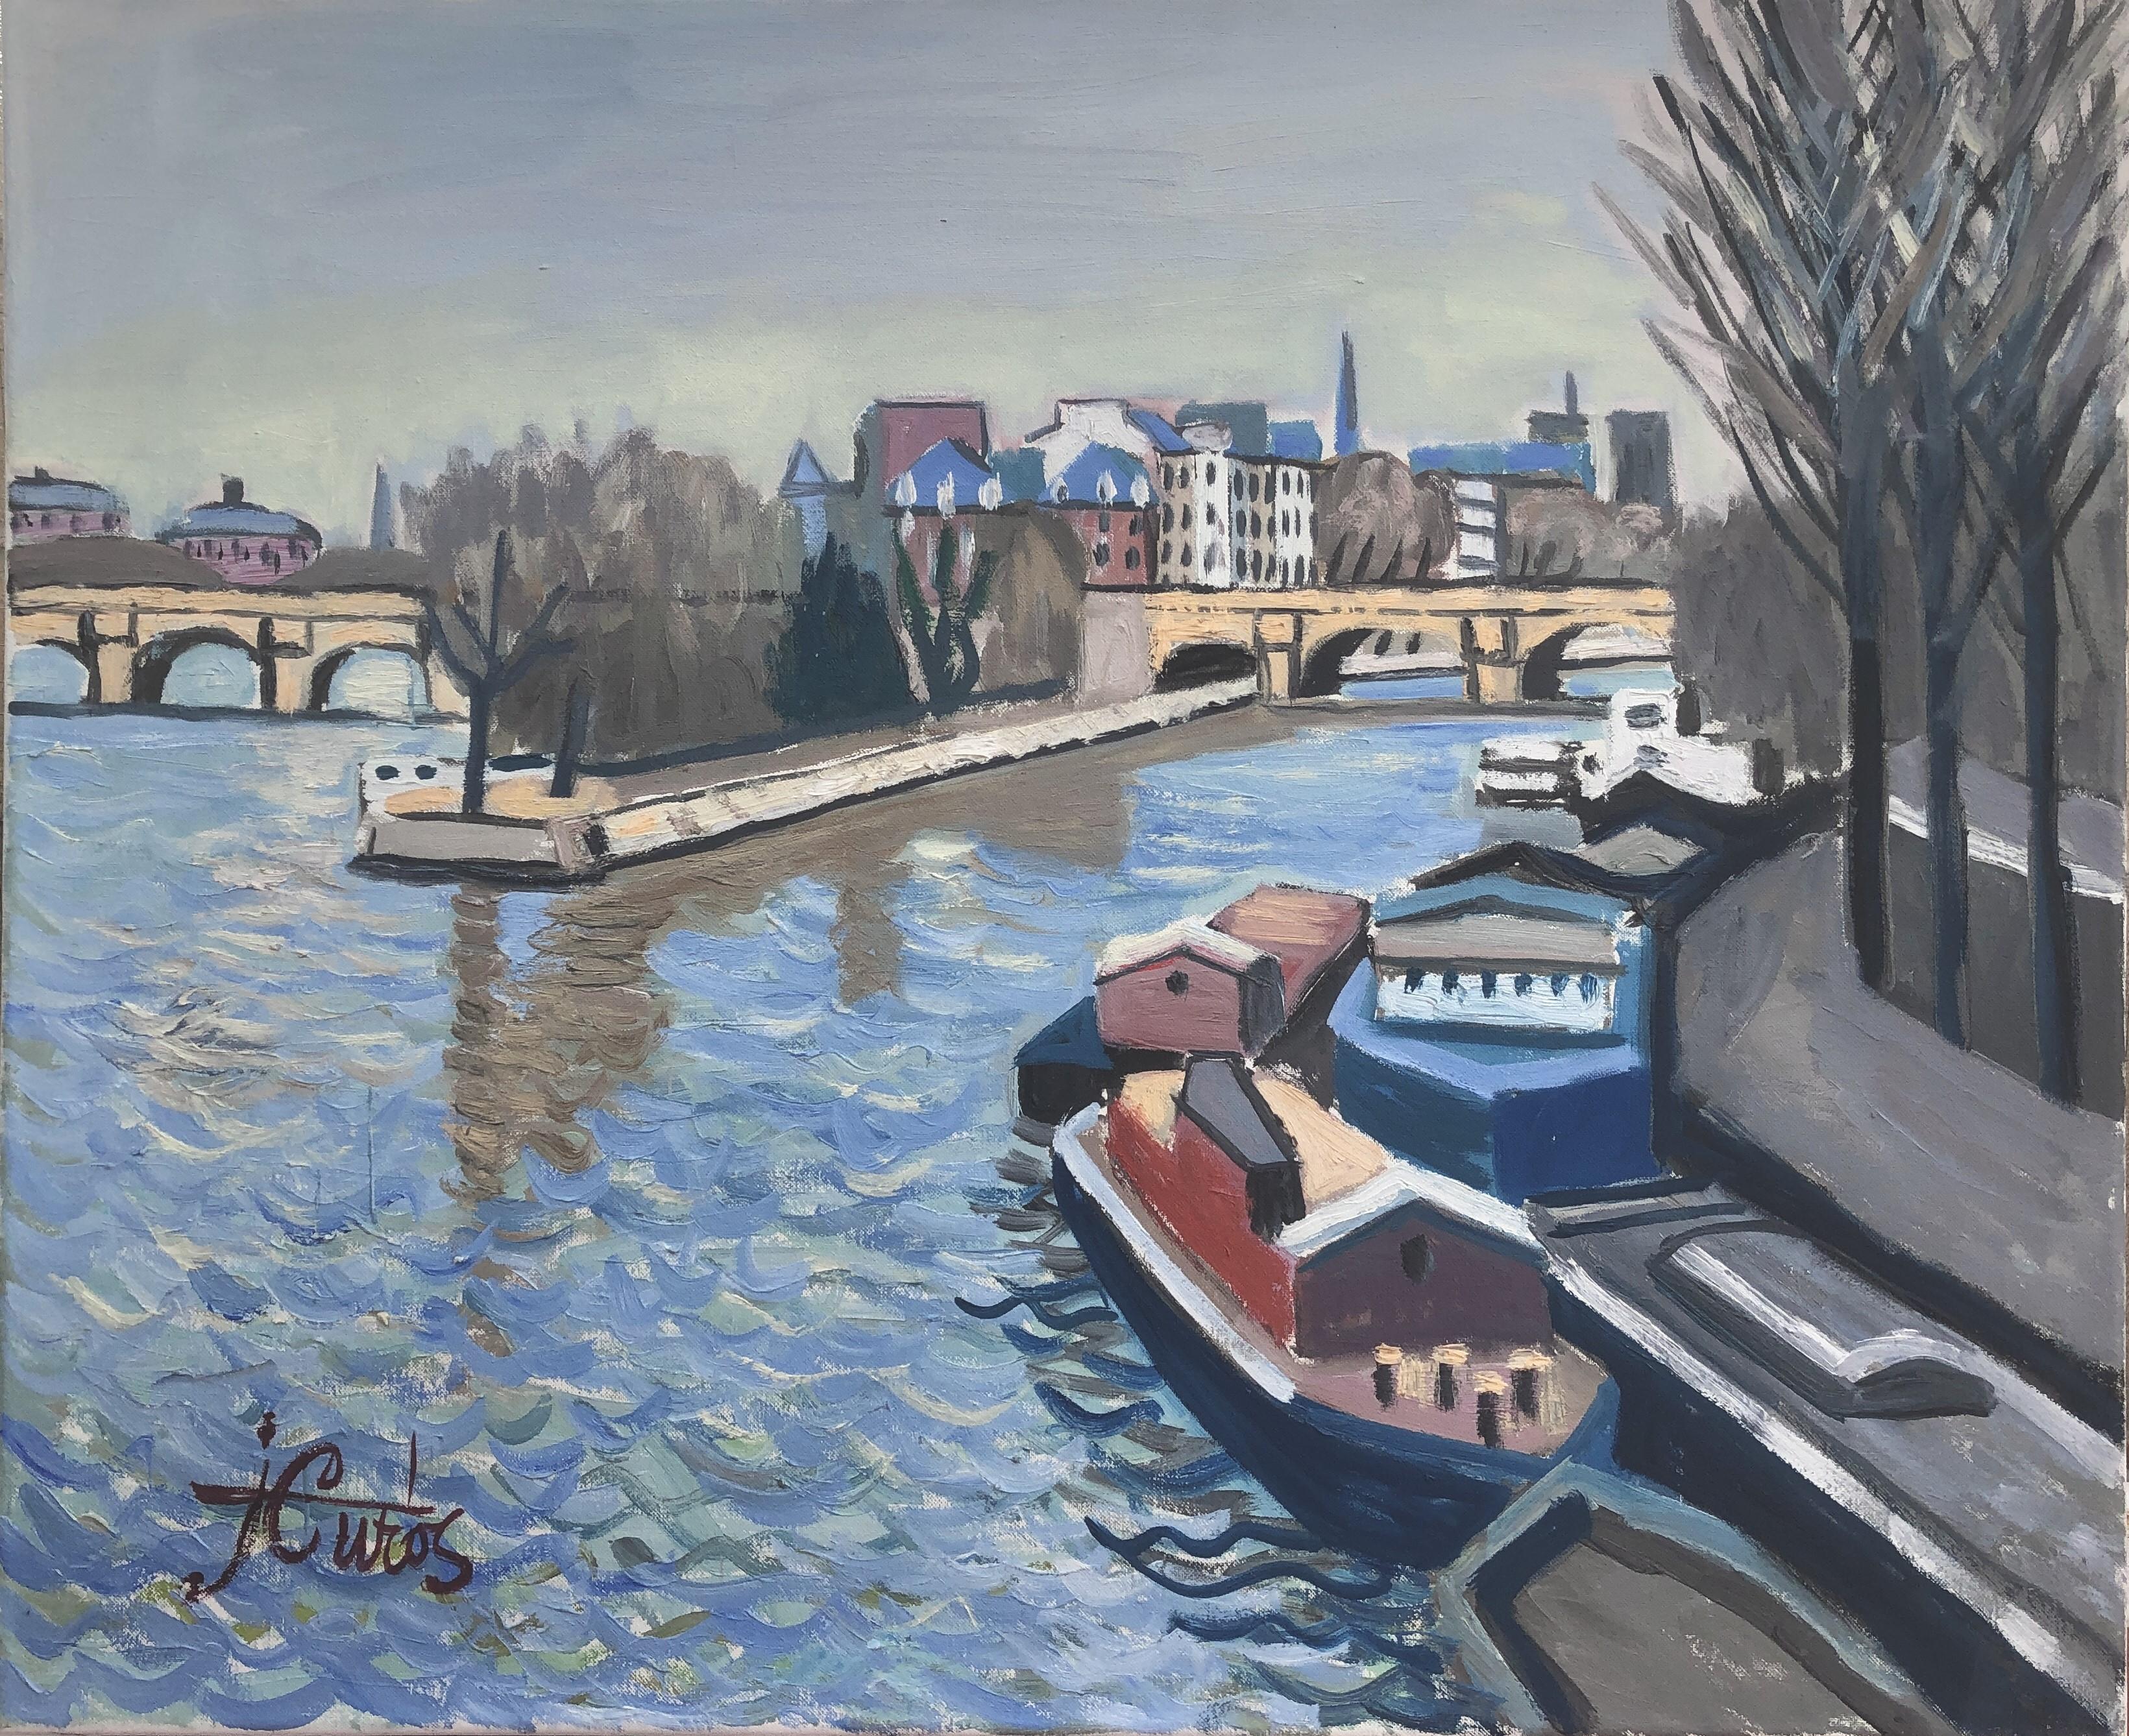 Seine Paris France oil on canvas painting urbanscape landscape